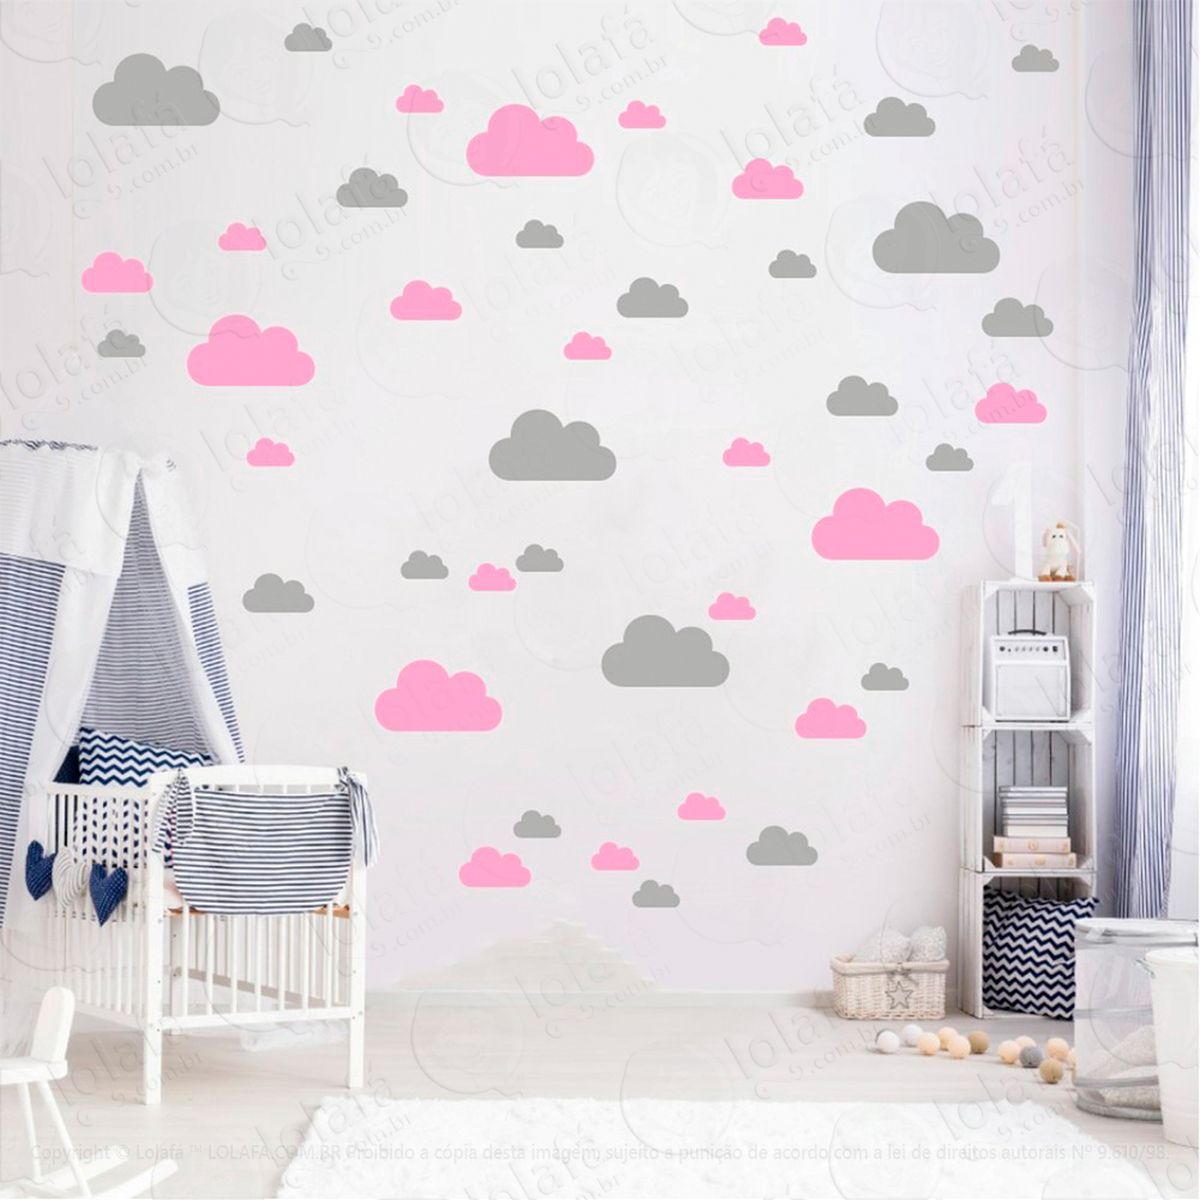 adesivos nuvens 78 peças adesivos para quarto de bebê infantil - mod:759